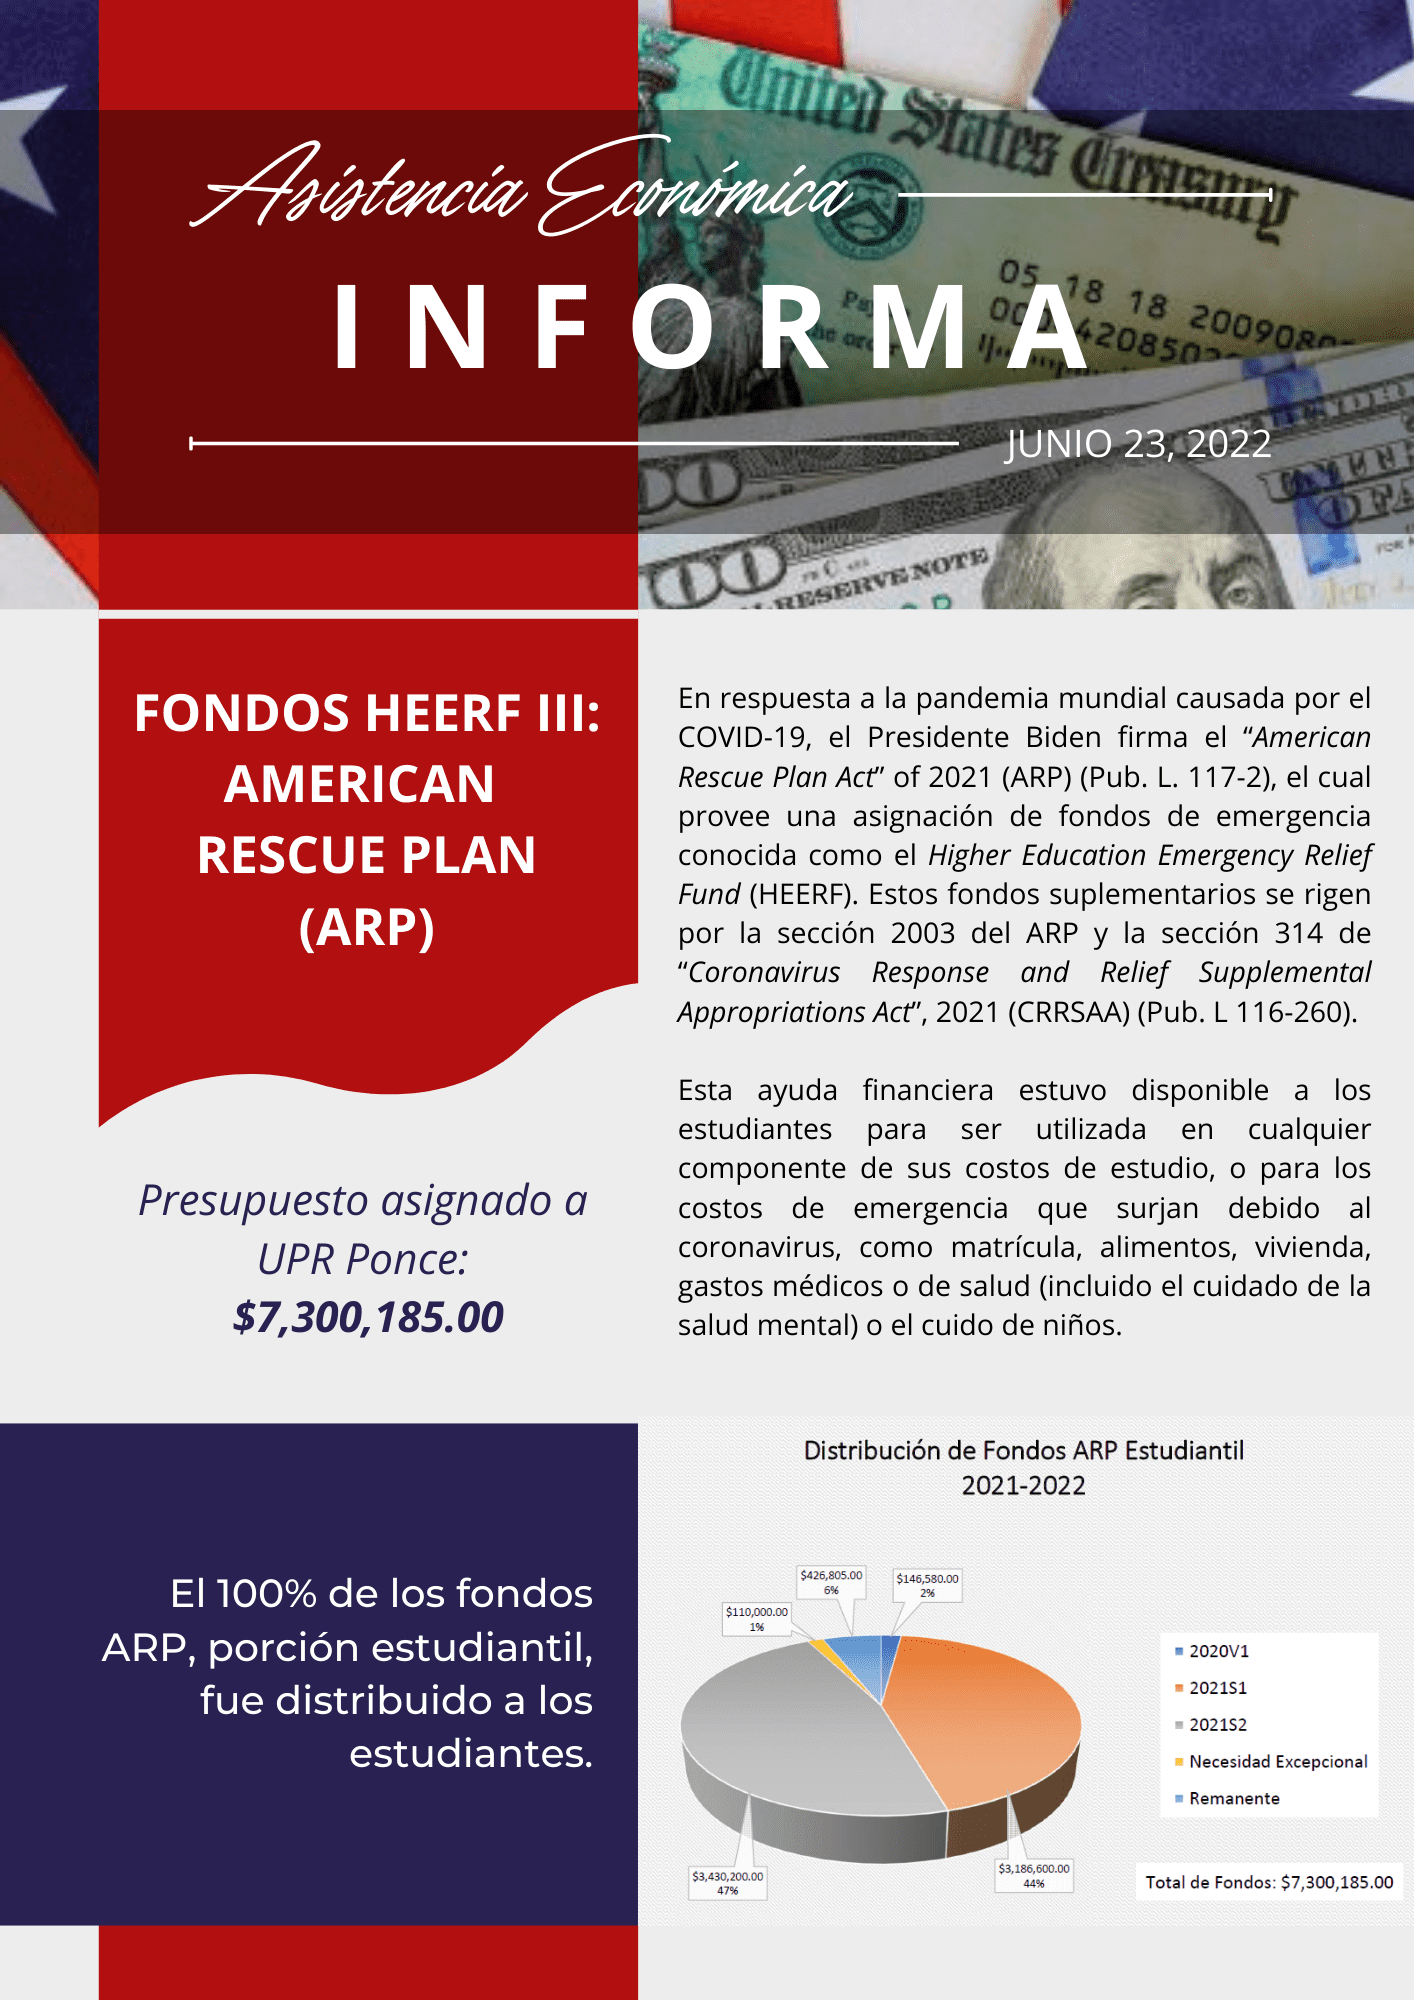 Imagen descriptiva con información, presupuesto y estadísticas sobre los fondos HEERF III: American Rescue Plan (ARP) para la UPR Ponce 2021-2022.